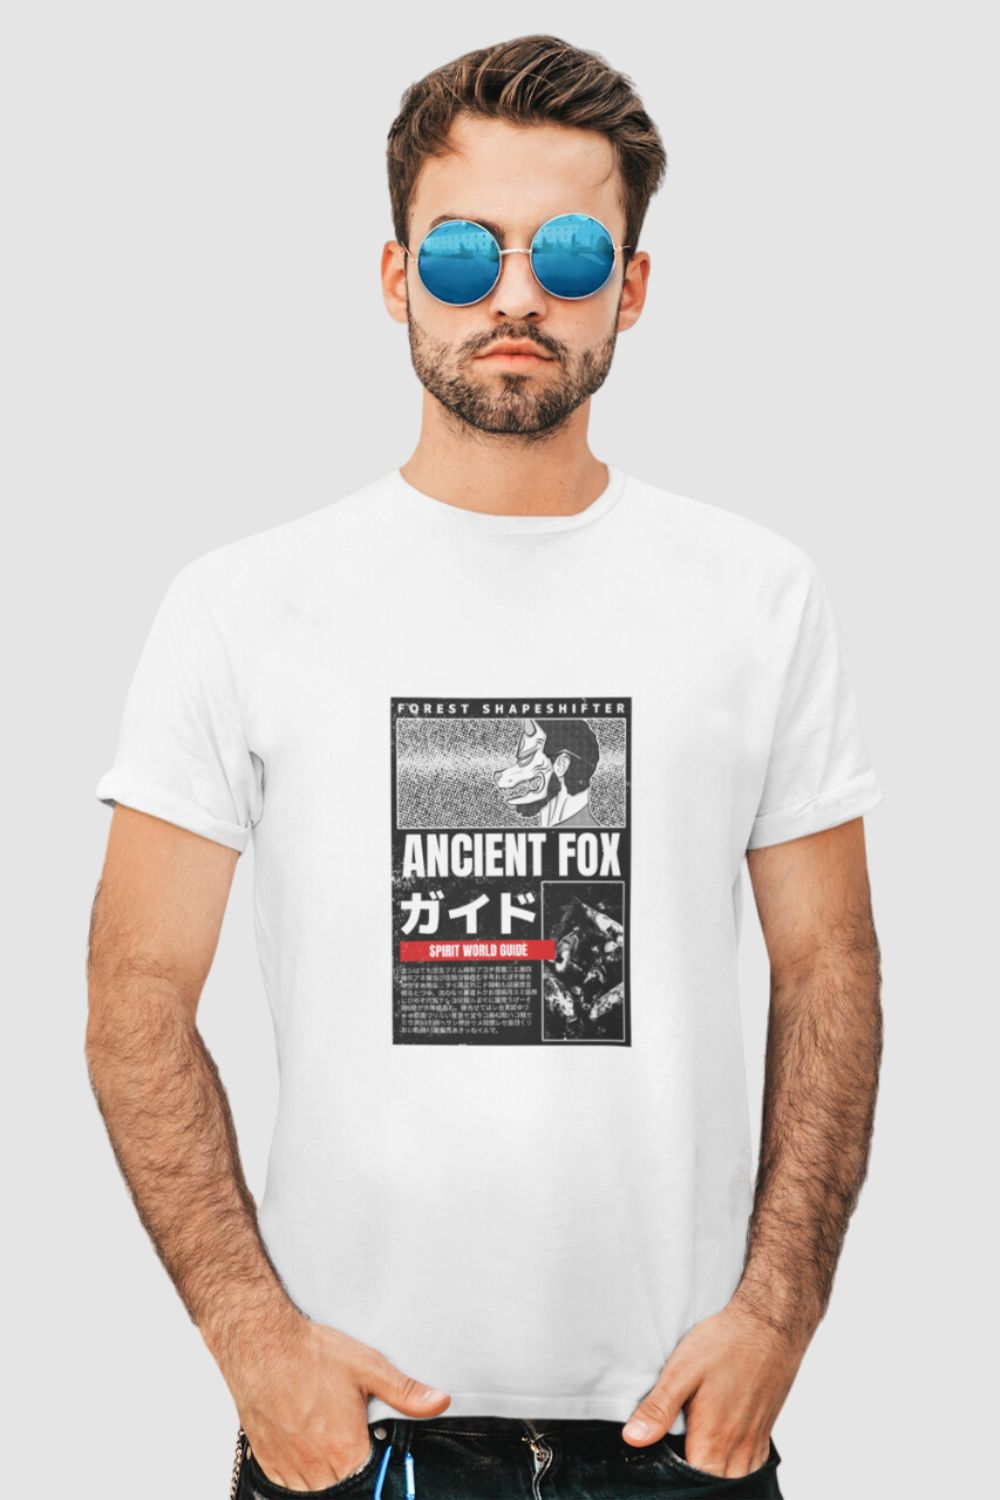 Ancient Fox Graphic Printed White Tshirt